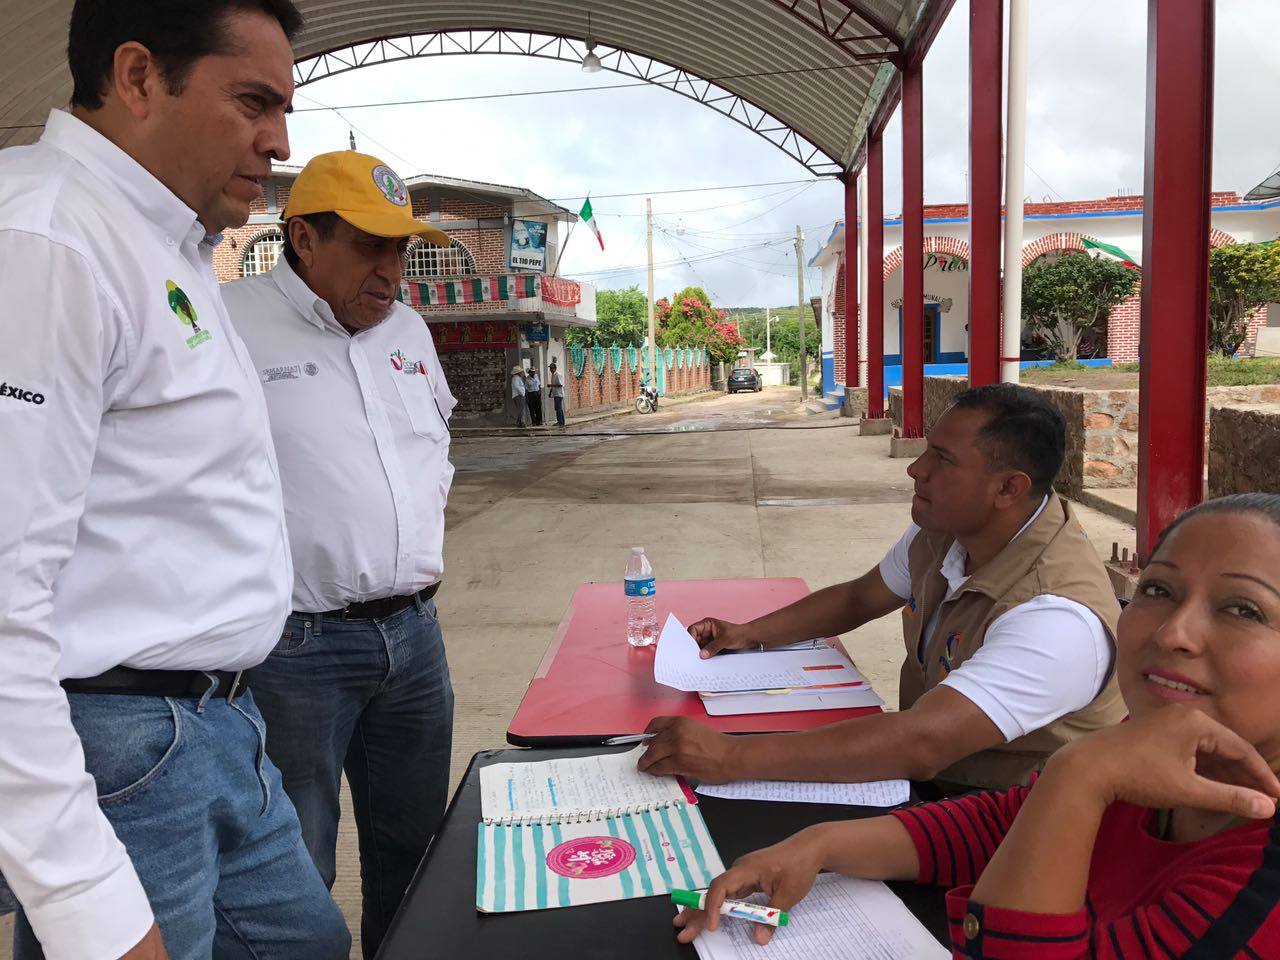 Arturo Beltrán Retis, director adjunto de la CONAFOR, informó a los pobladores que cuando concluyan sus labores se desplazarán a otros poblados para prestar apoyo.